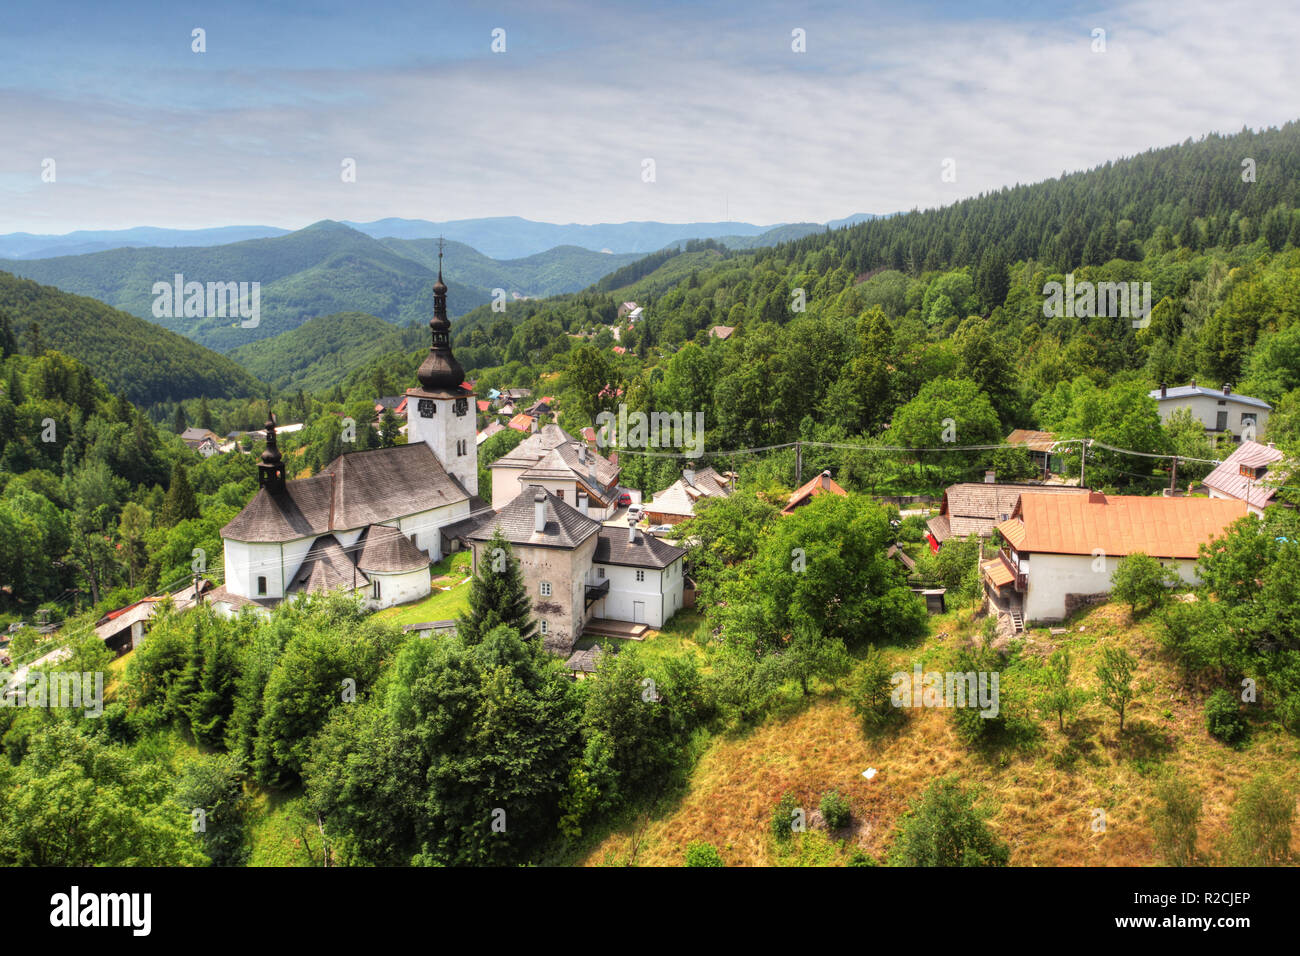 Country in Slovakia - Village Spania Dolina Stock Photo